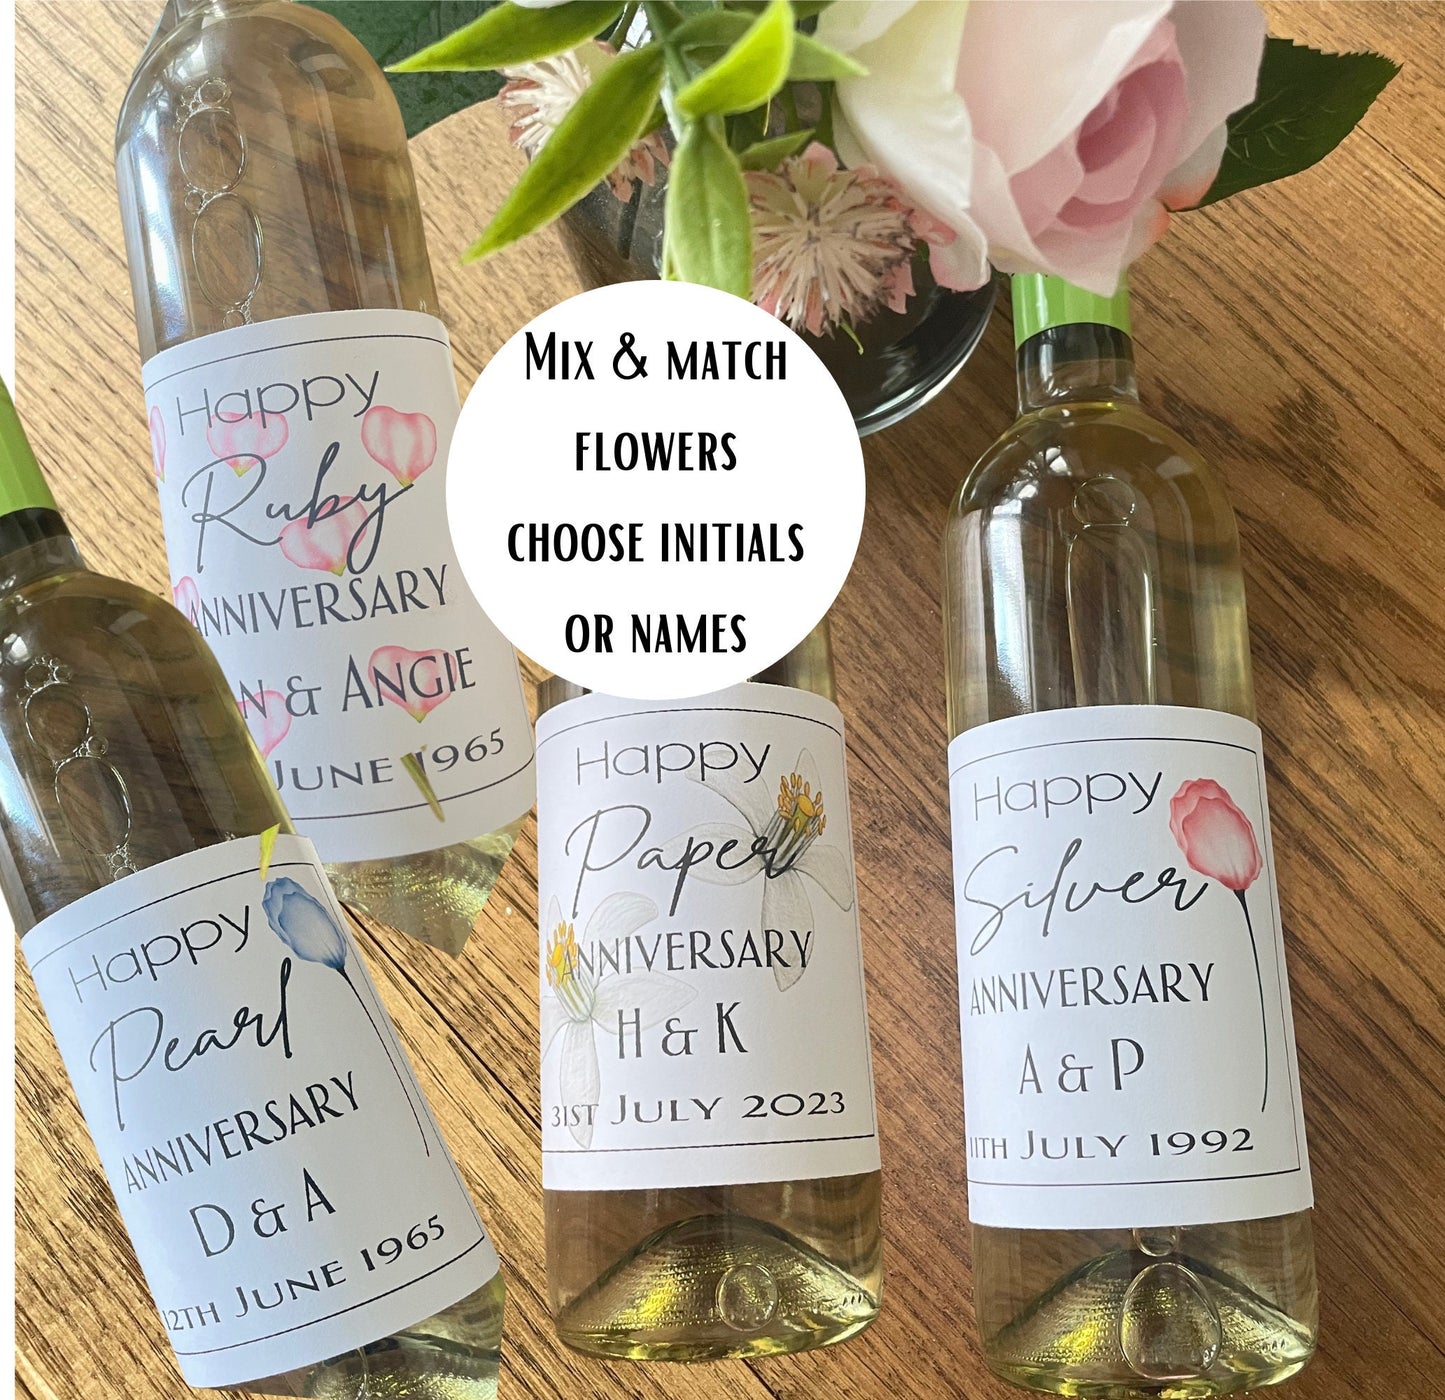 Custom Wine Bottle Labels with Floral Design